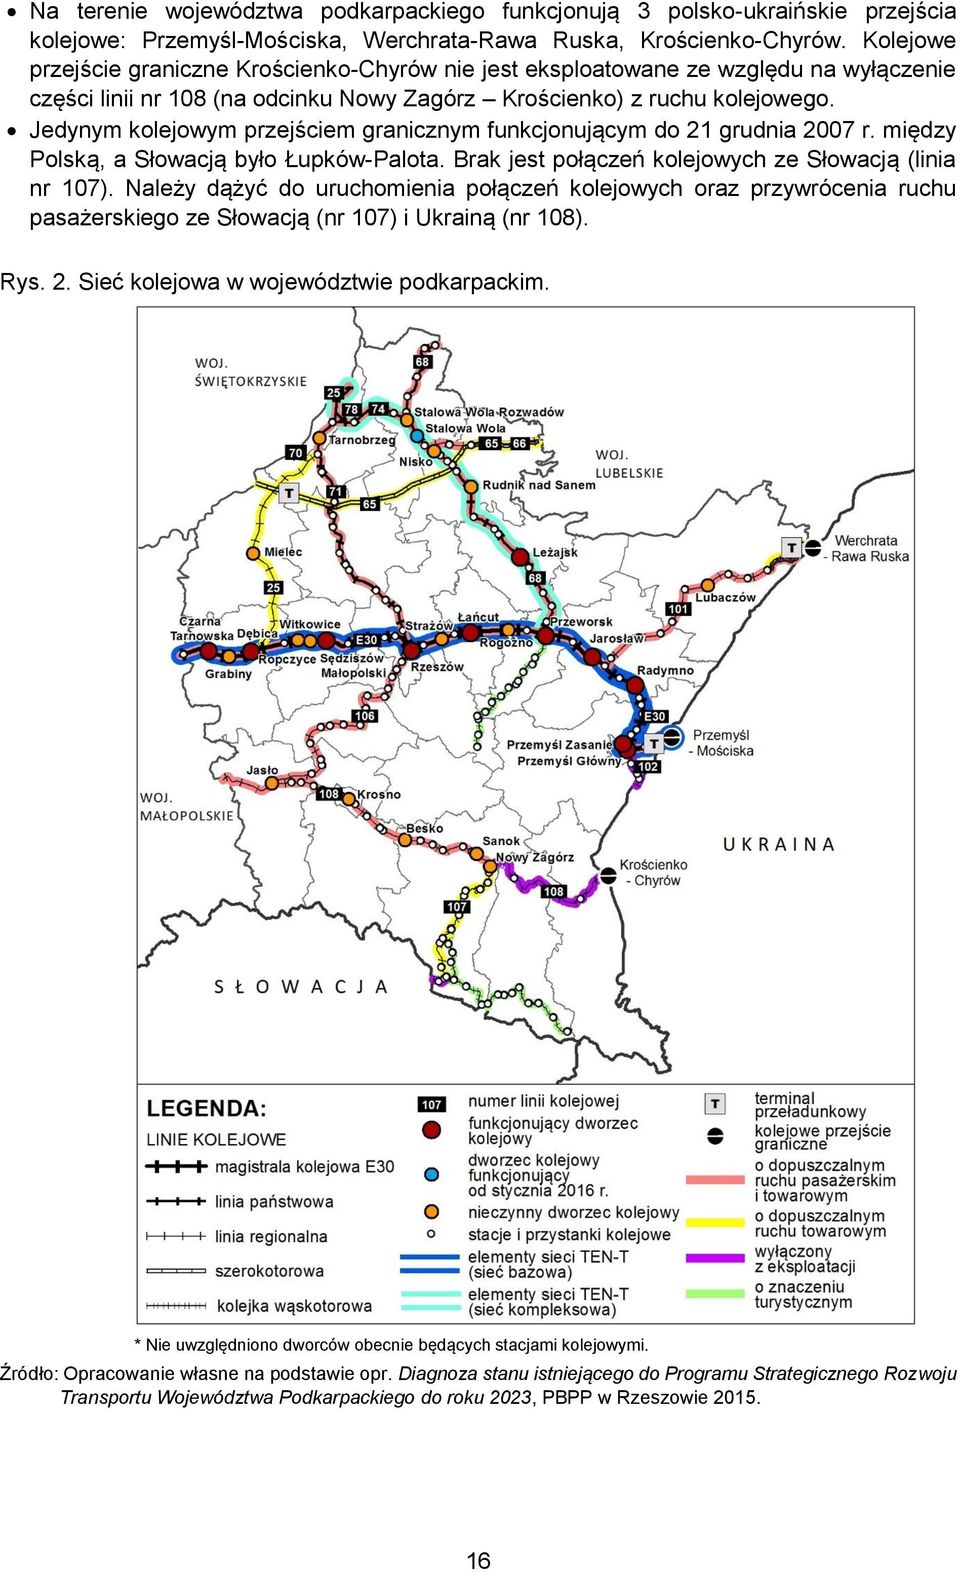 Jedynym kolejowym przejściem granicznym funkcjonującym do 21 grudnia 2007 r. między Polską, a Słowacją było Łupków-Palota. Brak jest połączeń kolejowych ze Słowacją (linia nr 107).